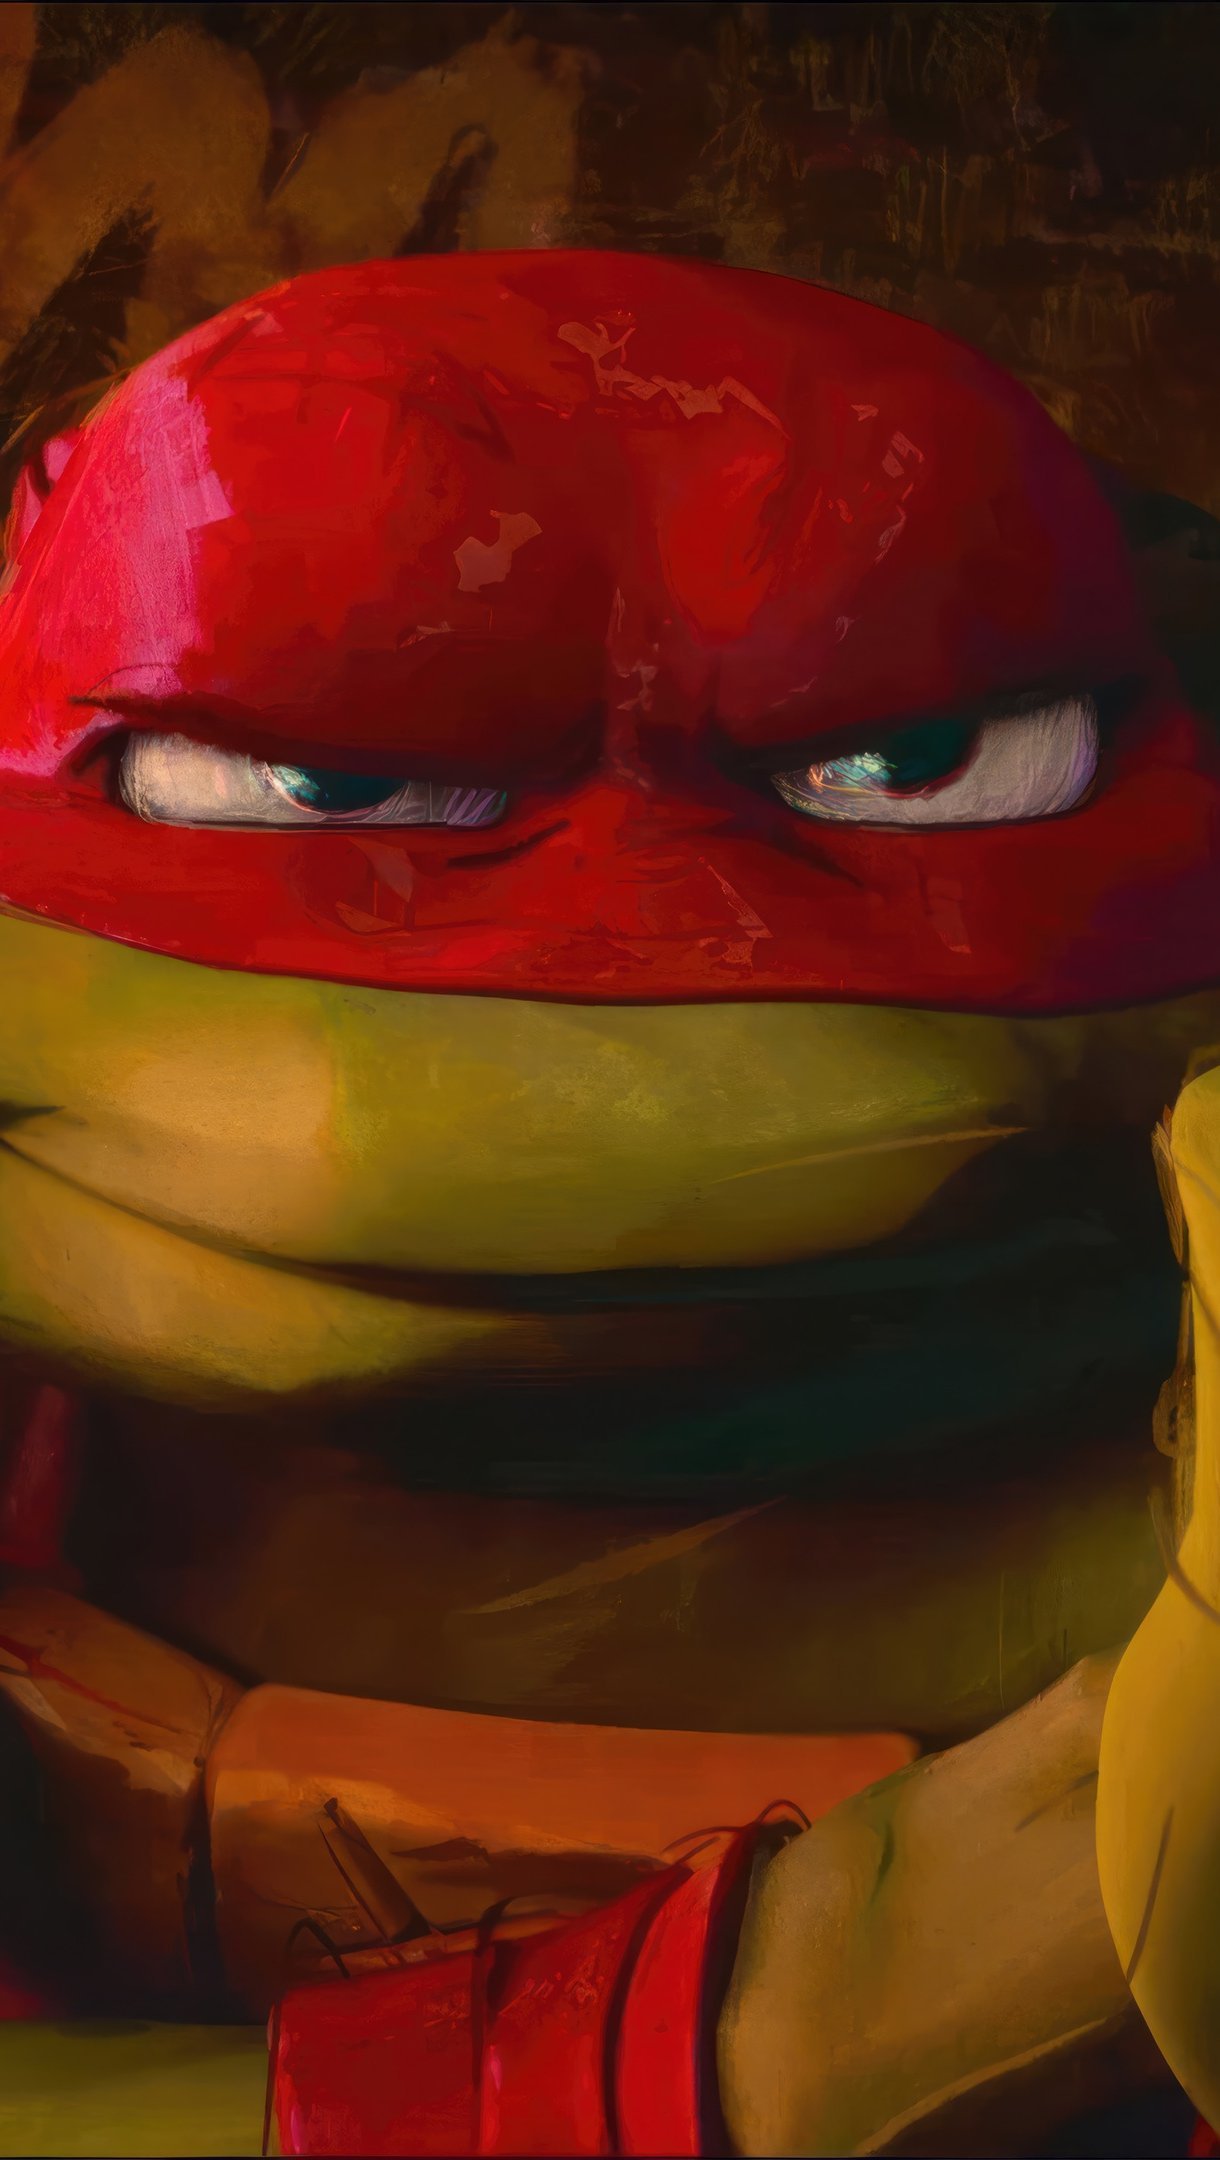 teenage mutant ninja turtles wallpaper raphael